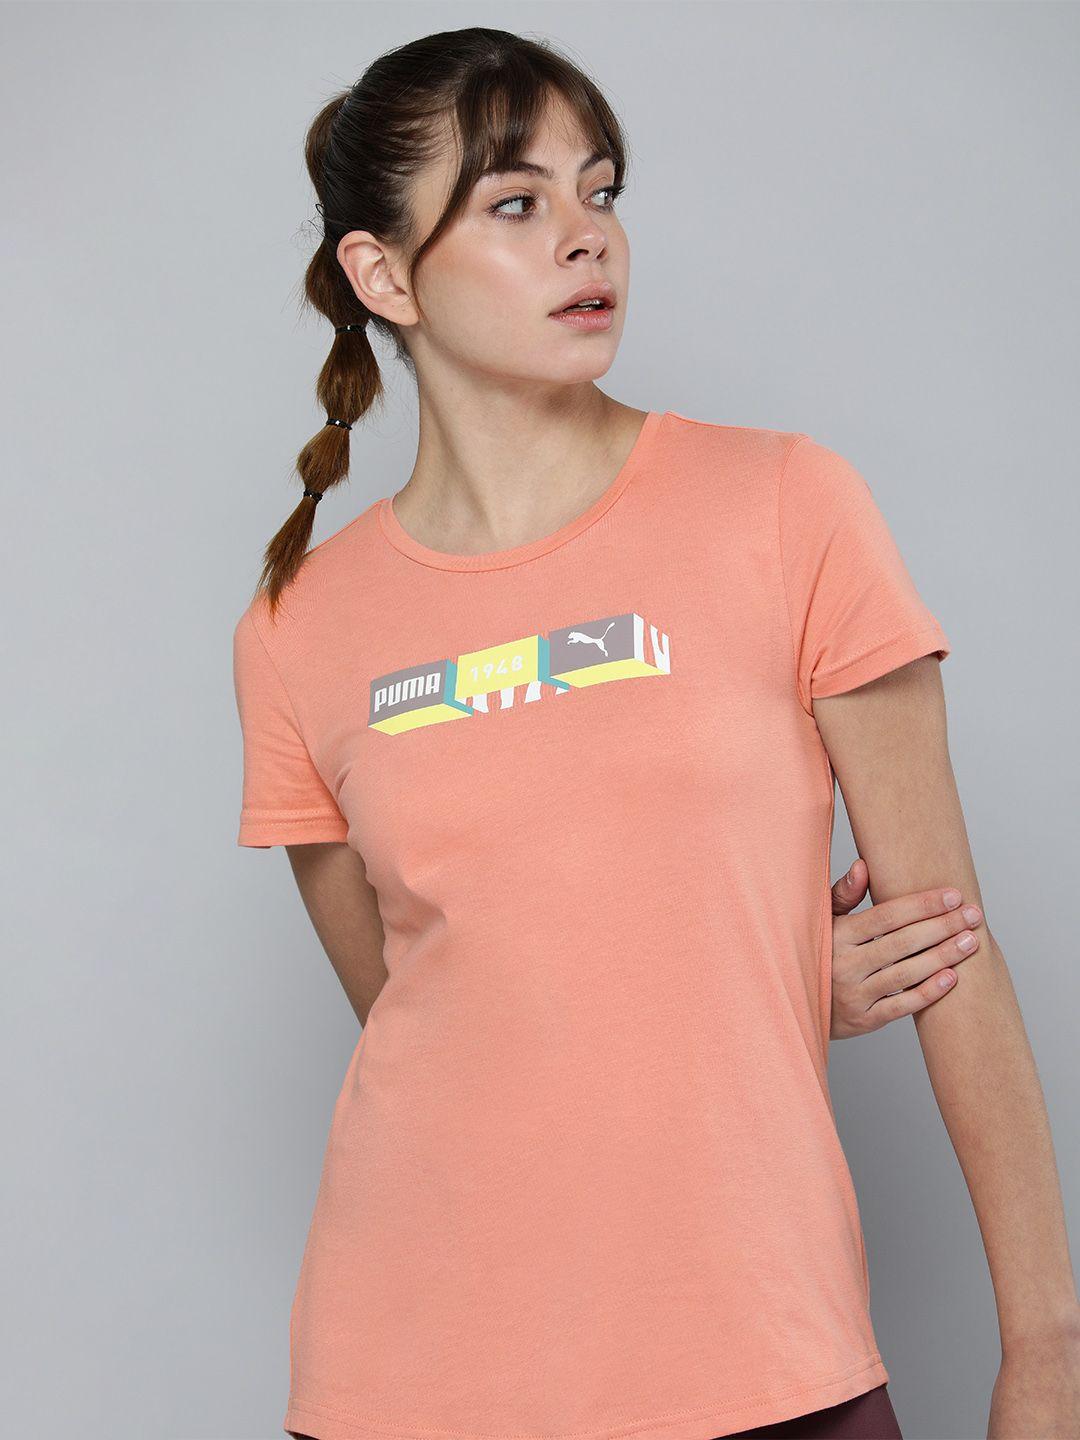 puma women peach-coloured brand logo printed pure cotton t-shirt